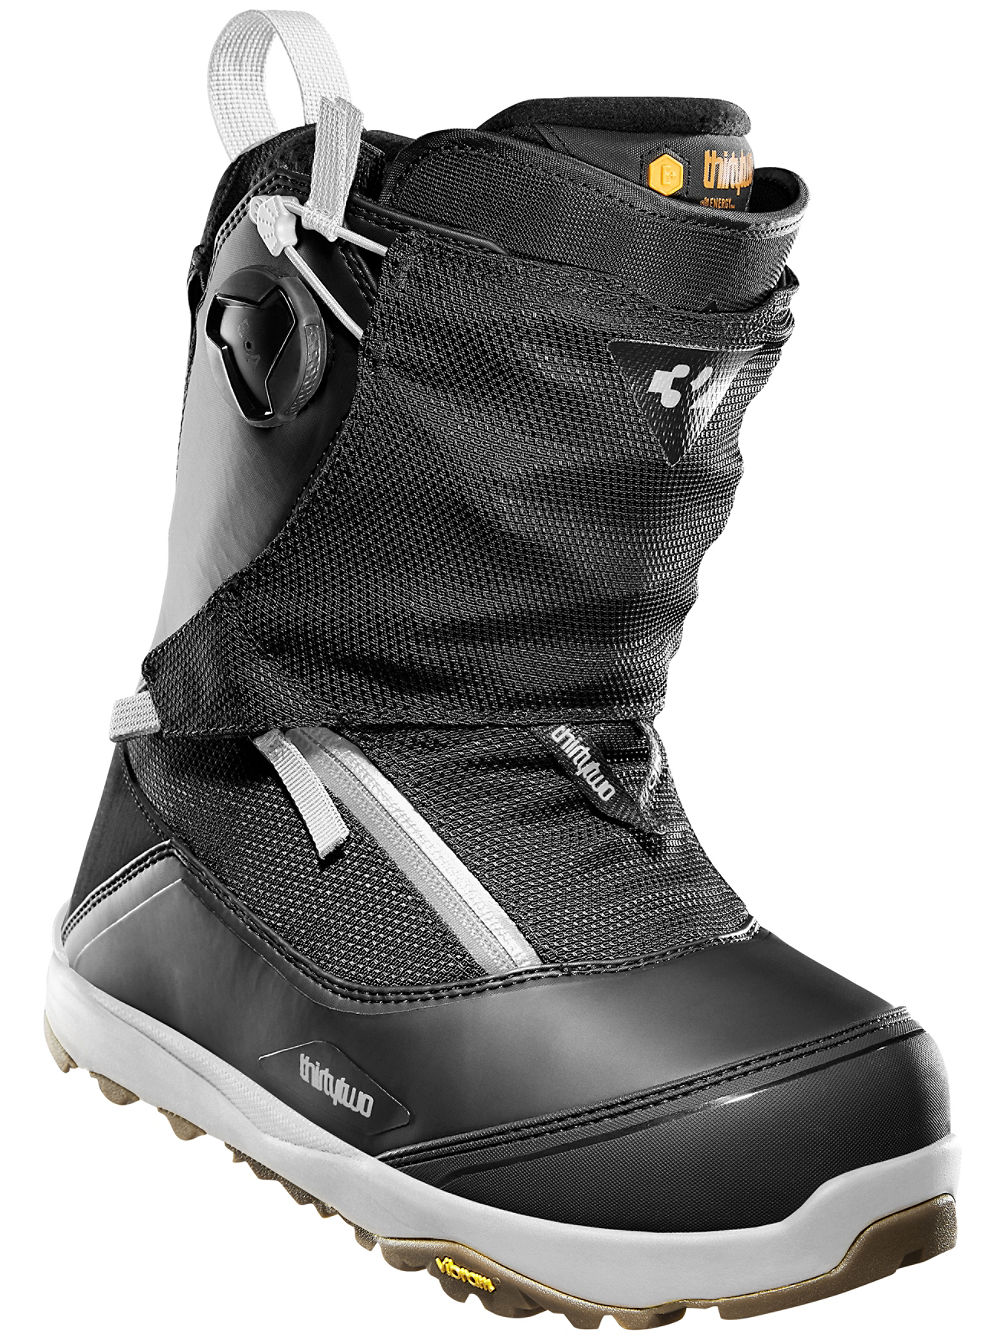 Hight MTB 2022 Boots de Snowboard